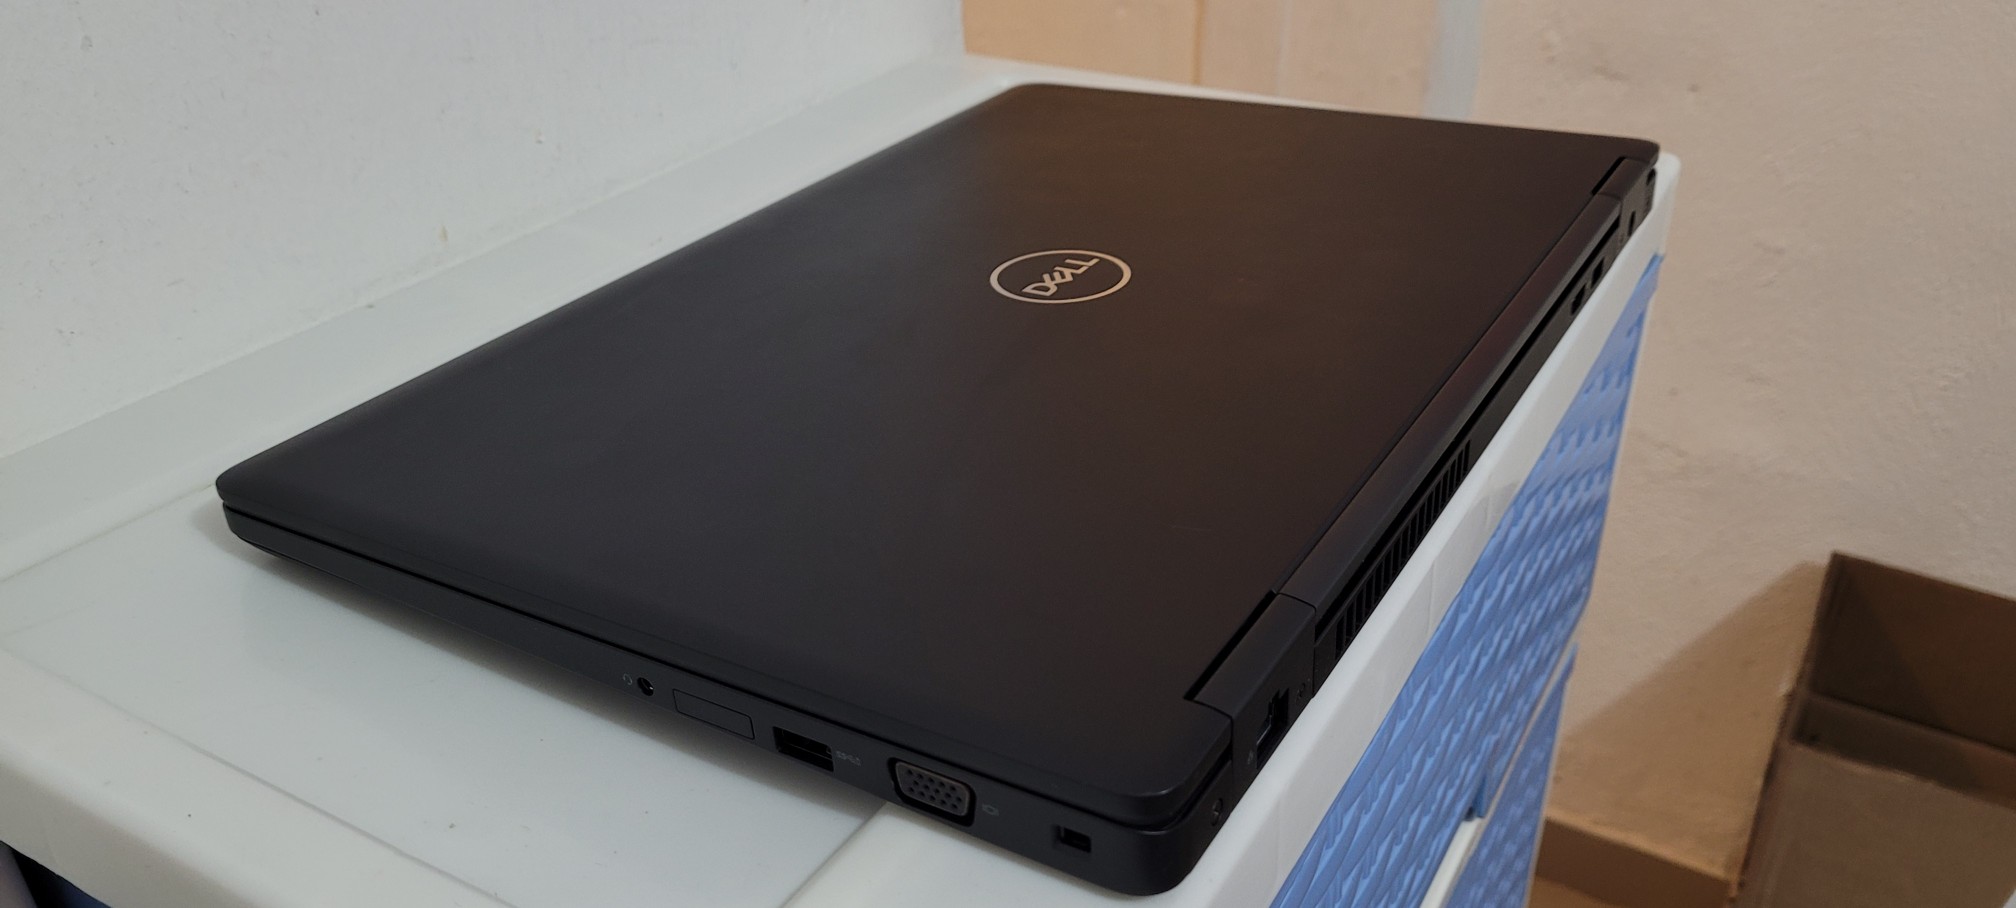 computadoras y laptops - Dell 5570 17 Pulg Core i7 6ta Gen Ram 16gb Disco Video intel Y Aty Radeon 2gb 2